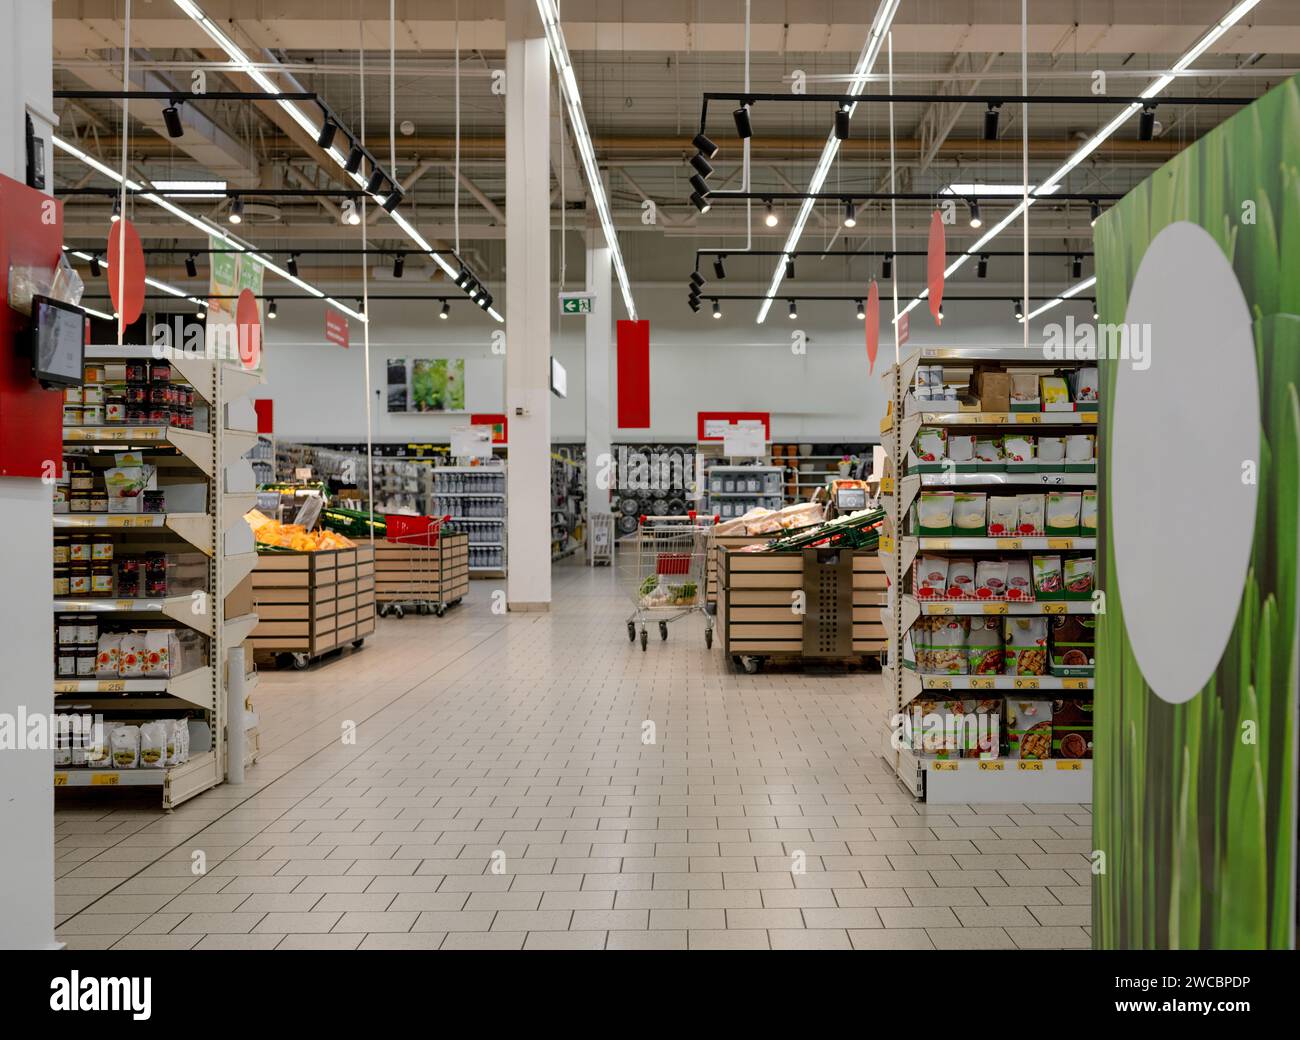 In Diesem Bild Sind Die Gänge Des Supermarktes Voller Waren Stockfoto